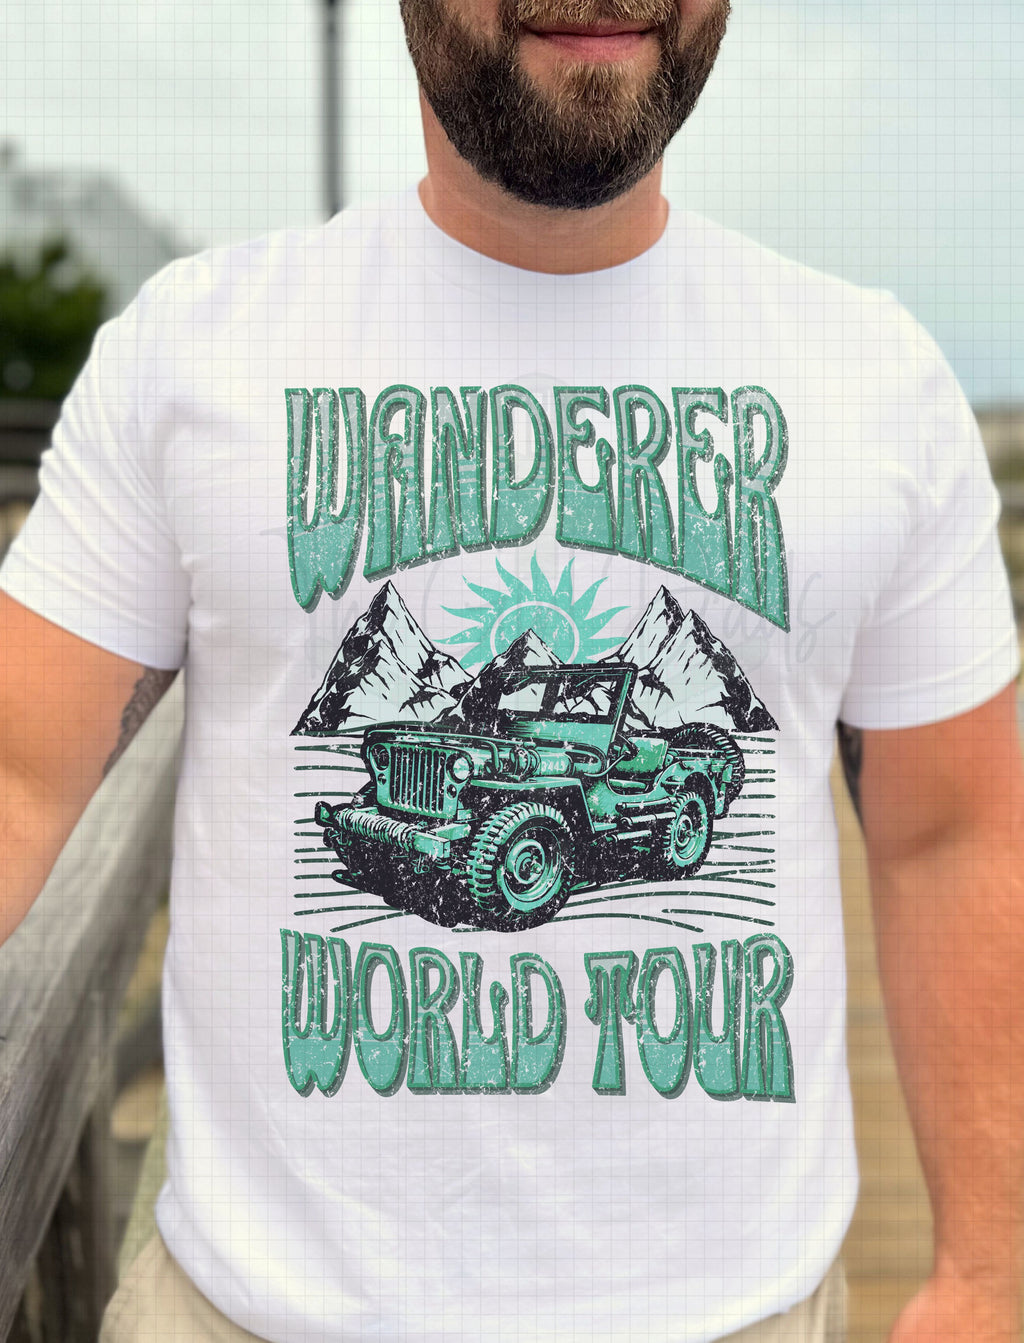 Wanderer World Tour Top Design